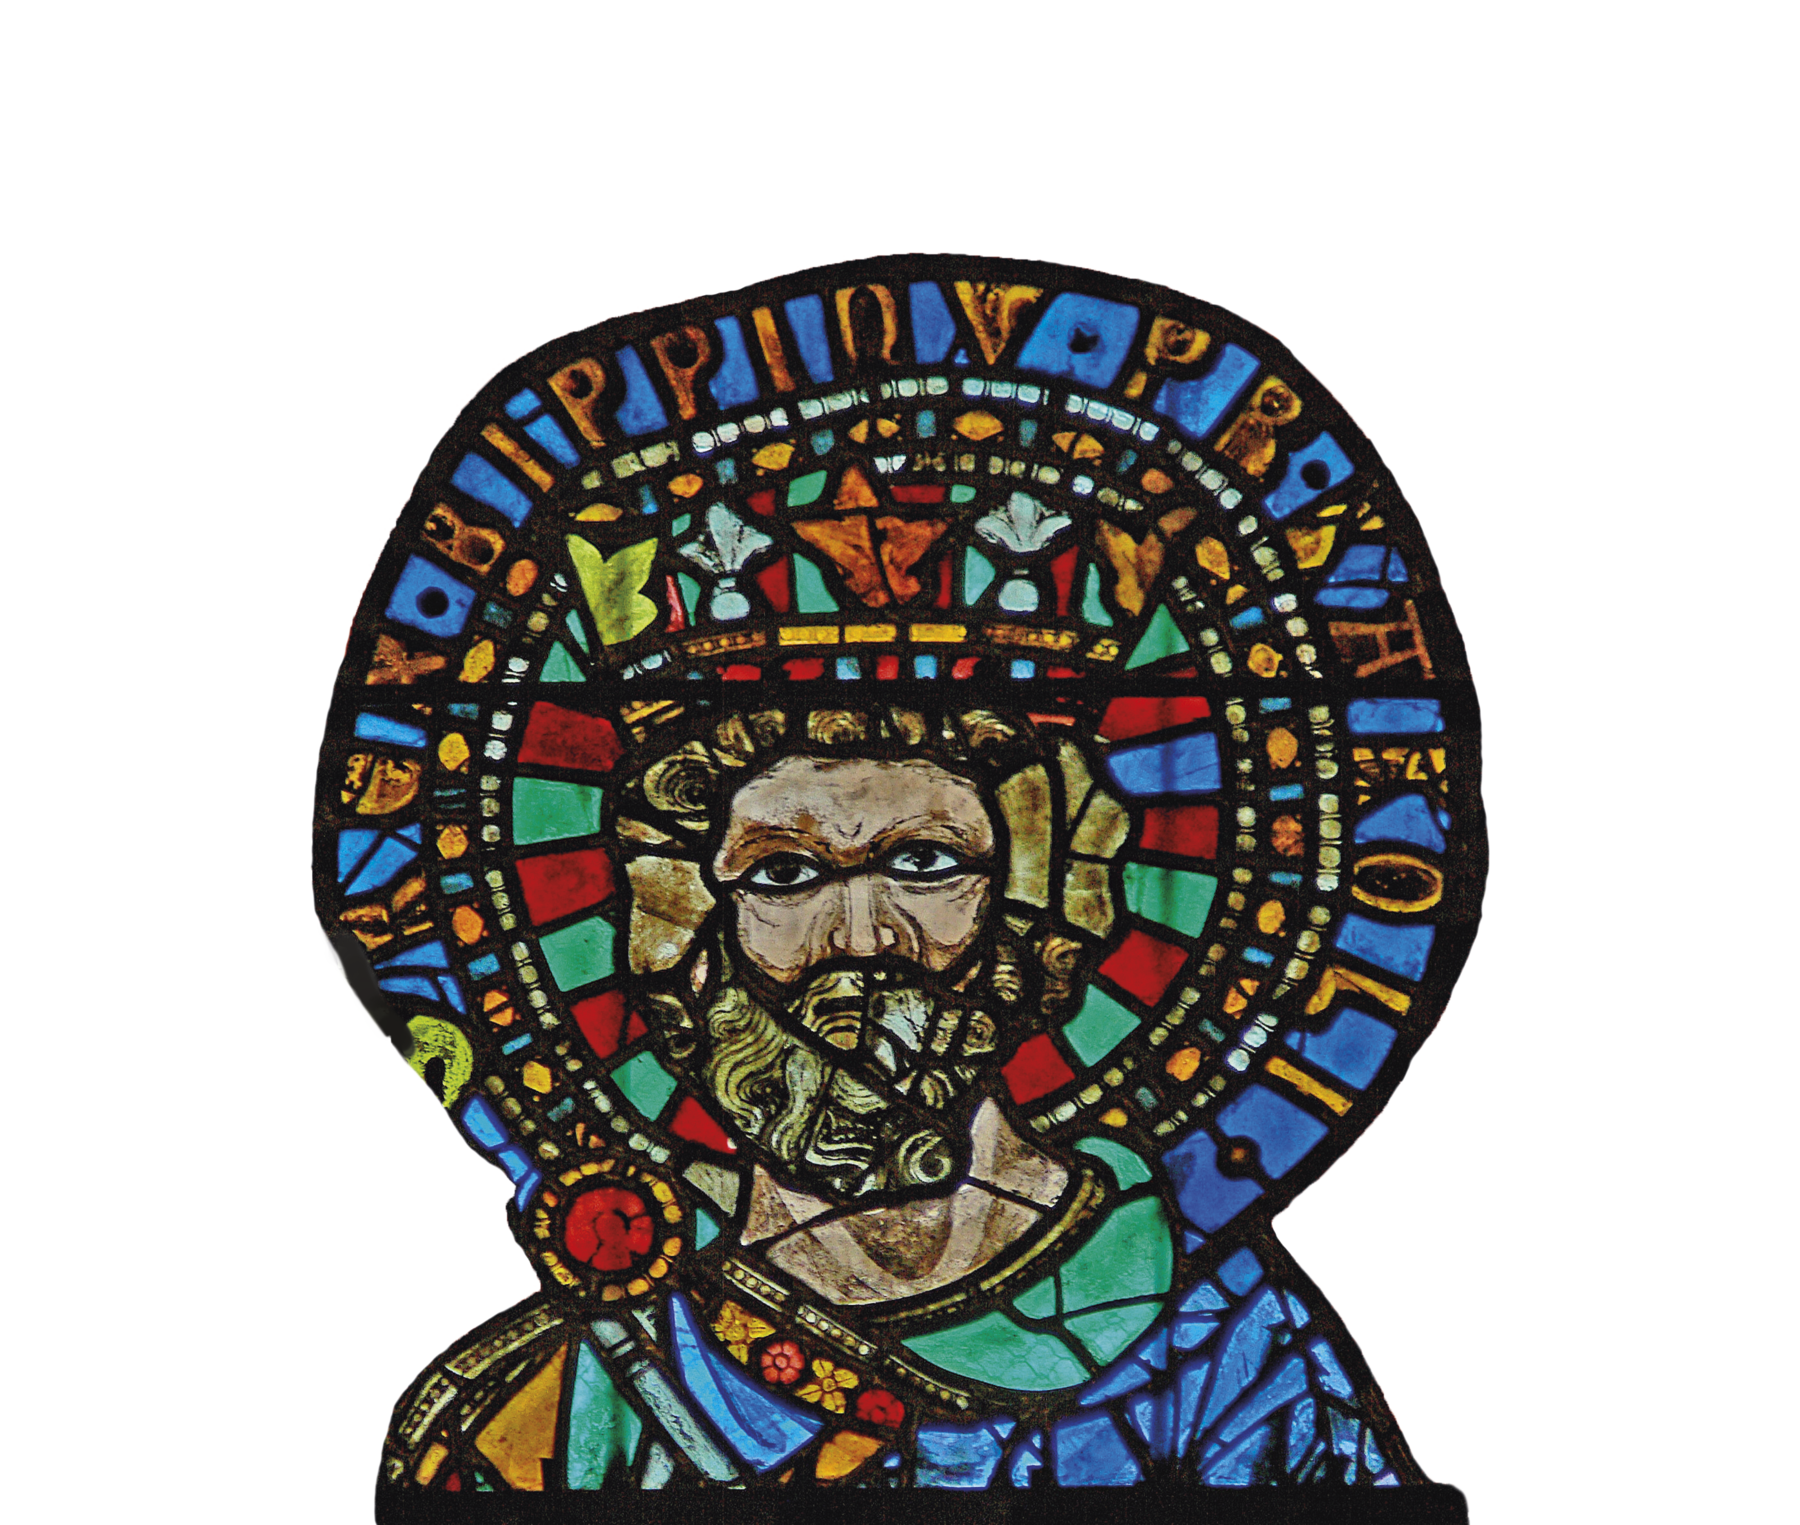 Vitral. Mosaico colorido do busto de um homem com barba, usando uma coroa e um manto. Atrás dele, um círculo com escritas na borda.